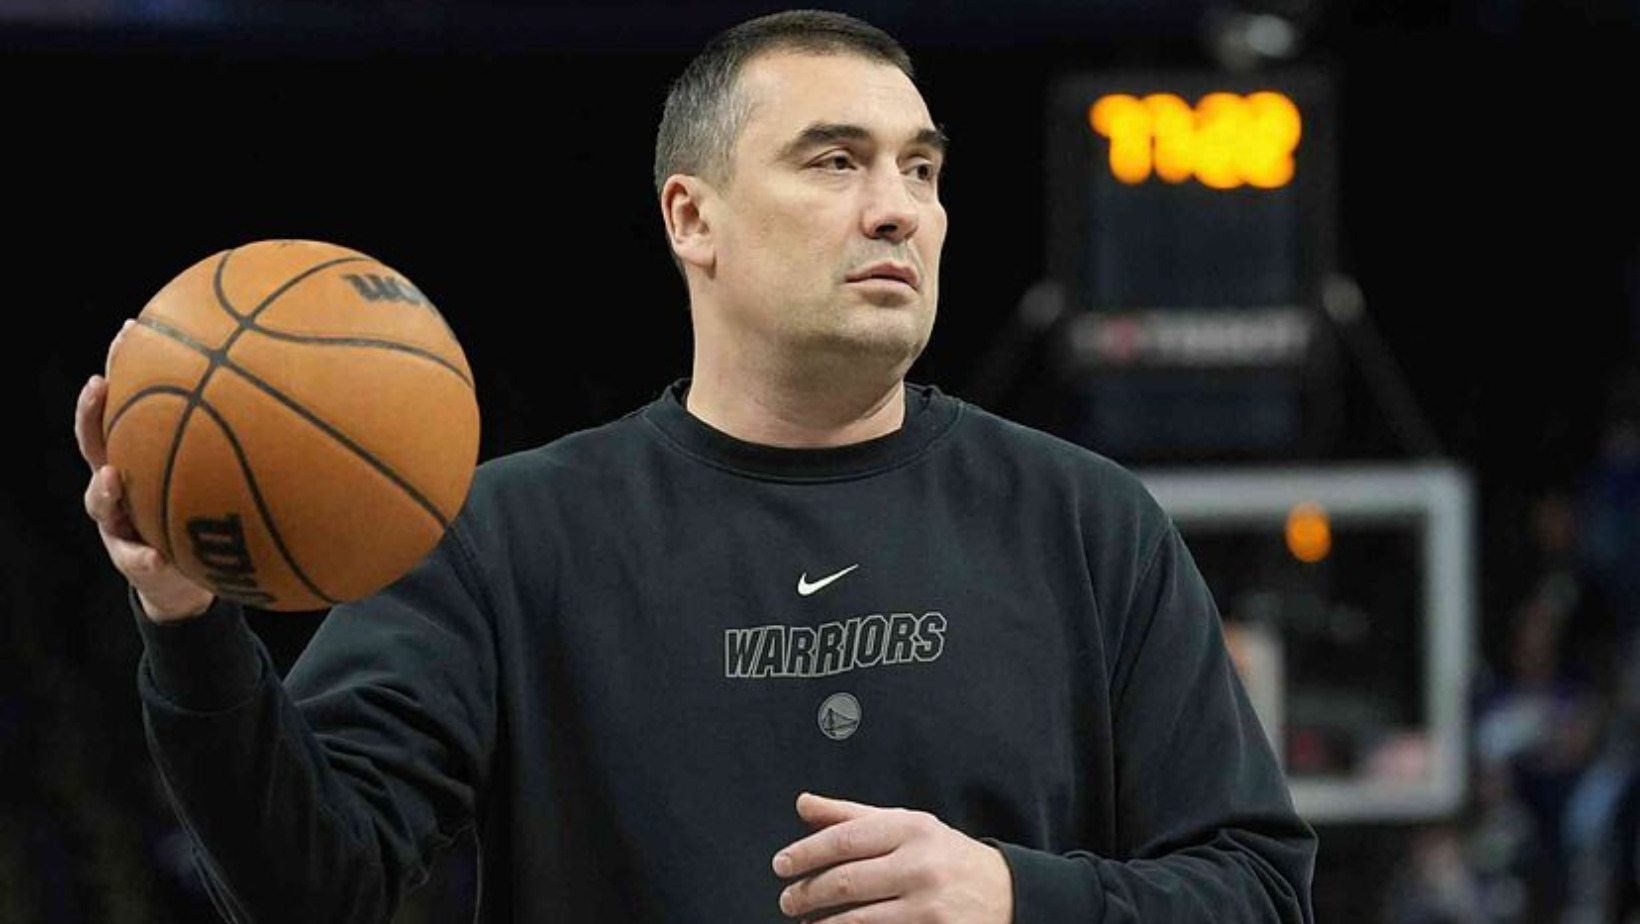 Dejan Milojevic fue un jugador y entrenador de baloncesto serbio. Foto: Fuente externa